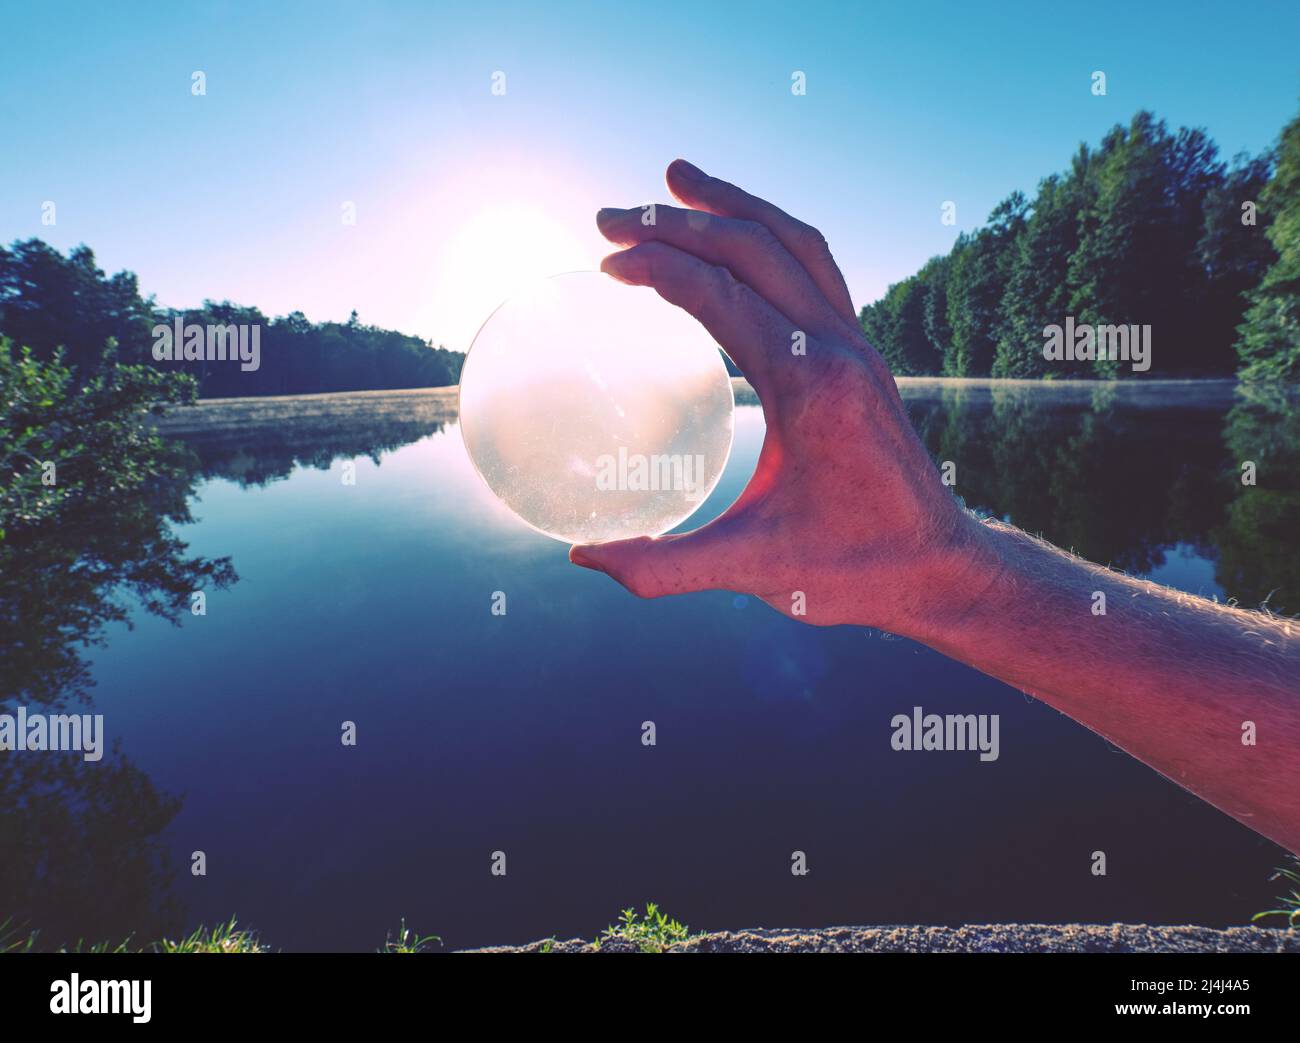 Mirando a través de la lente de cristal. La bola de cristal de sujeción a mano refleja de forma exclusiva la escena del lago durante el verano con la puesta de sol. Foto de stock